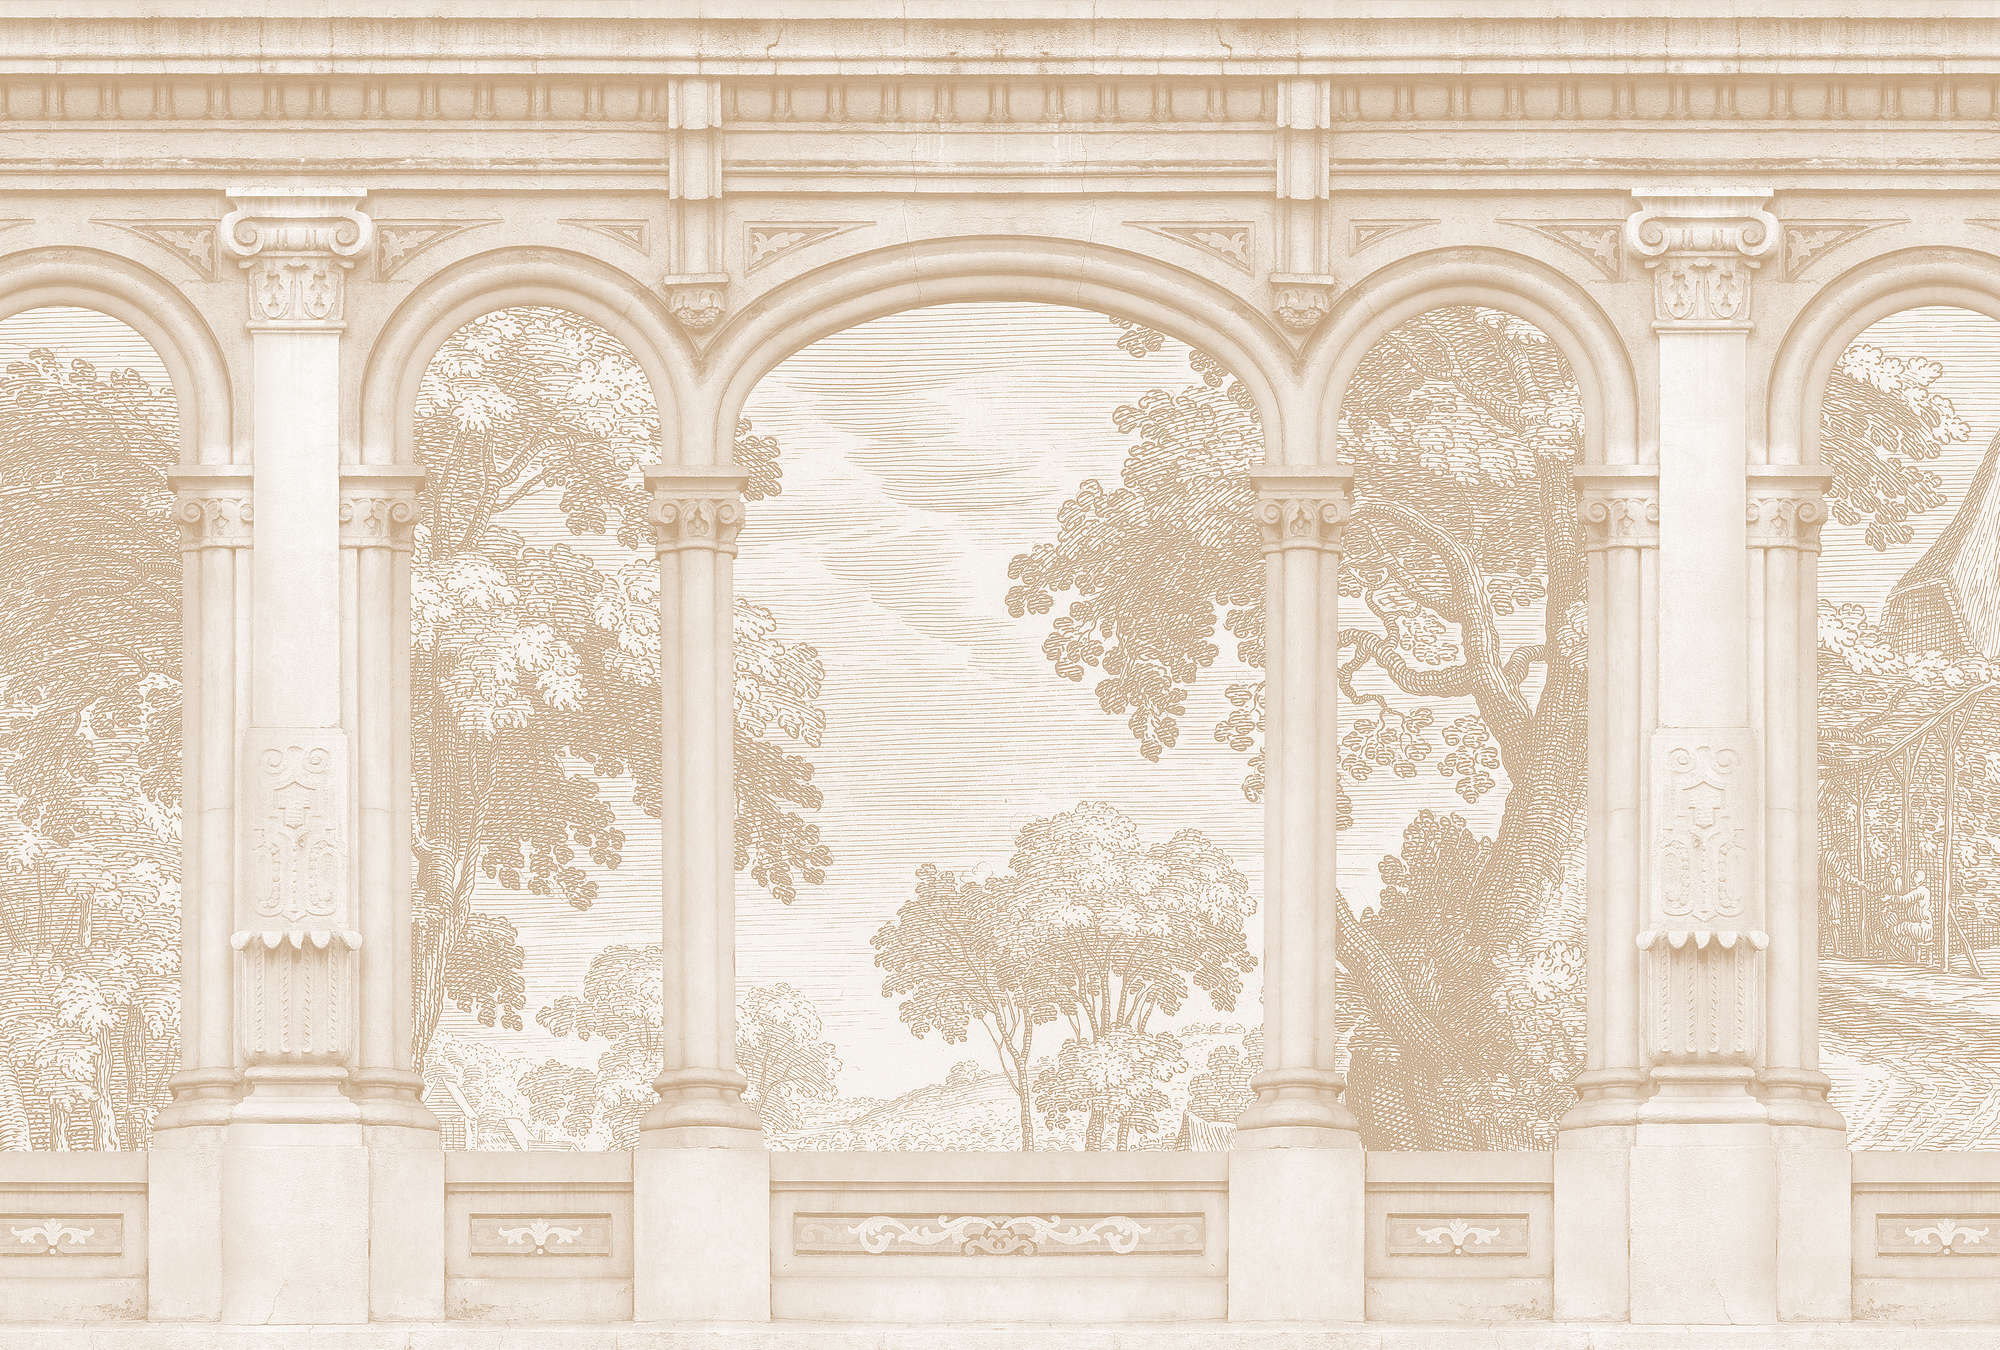             Roma 2 - papier peint beige Historic Design avec fenêtre en arc de cercle
        